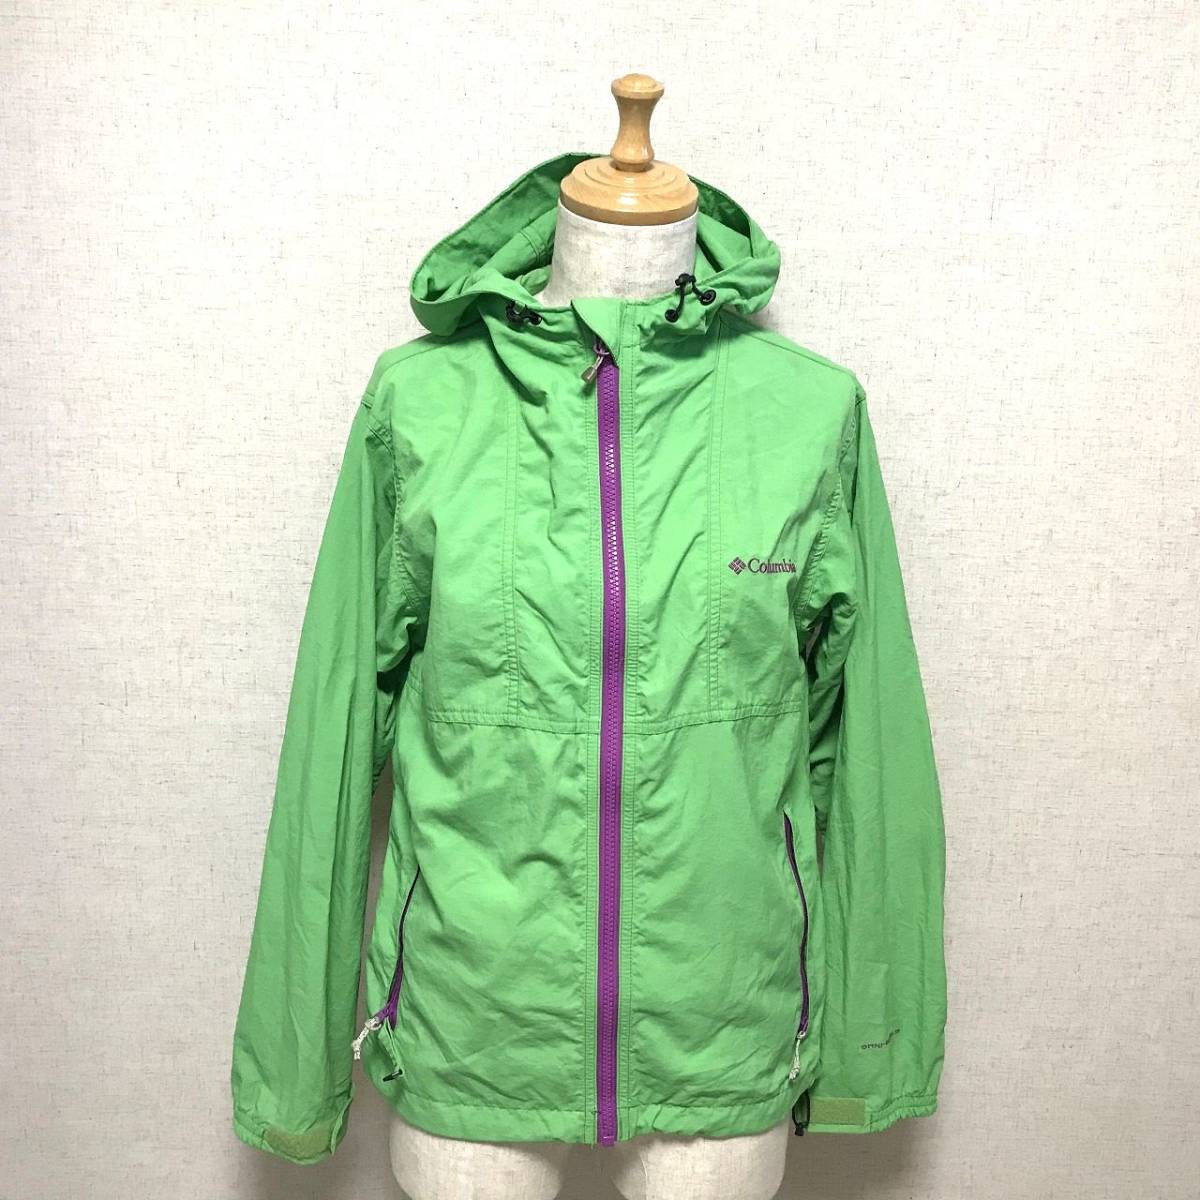  Colombia S nylon jacket OMNI-SHIELD mountain jacket green 2003HA-129*6#/5